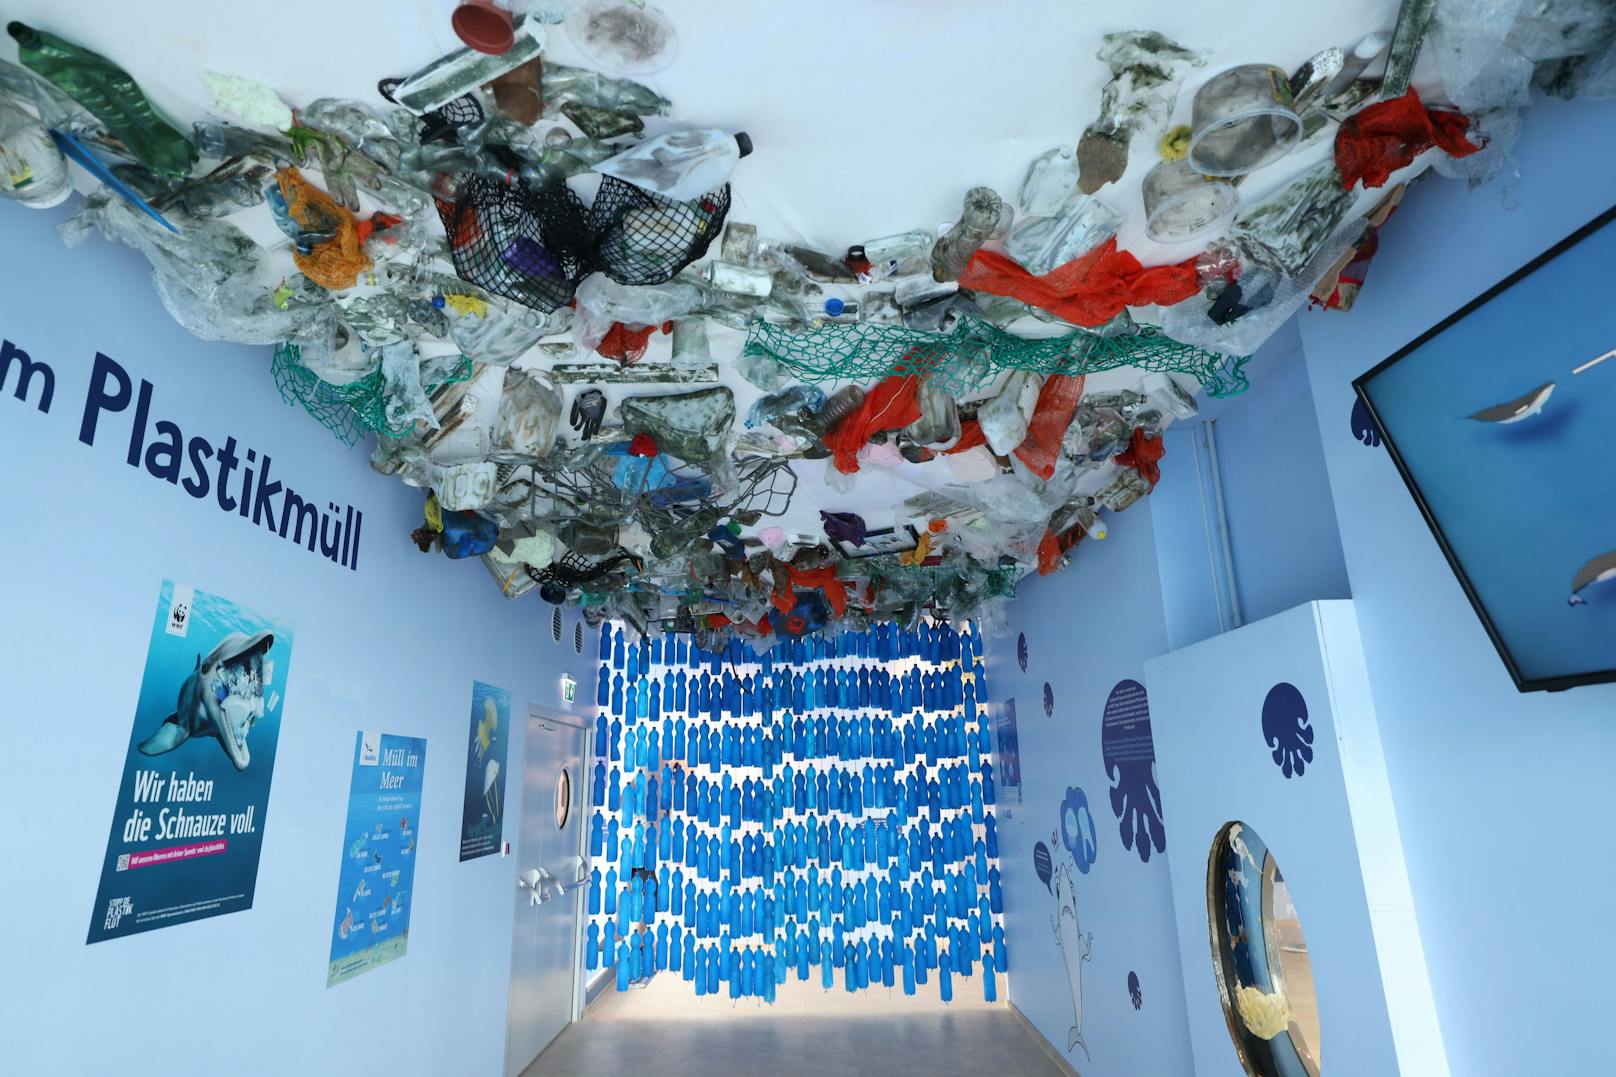 Im Haus des Meeres zeigt die Ausstellung "Wir und das Meer" die Verschmutzung der Meere durch Plastik.